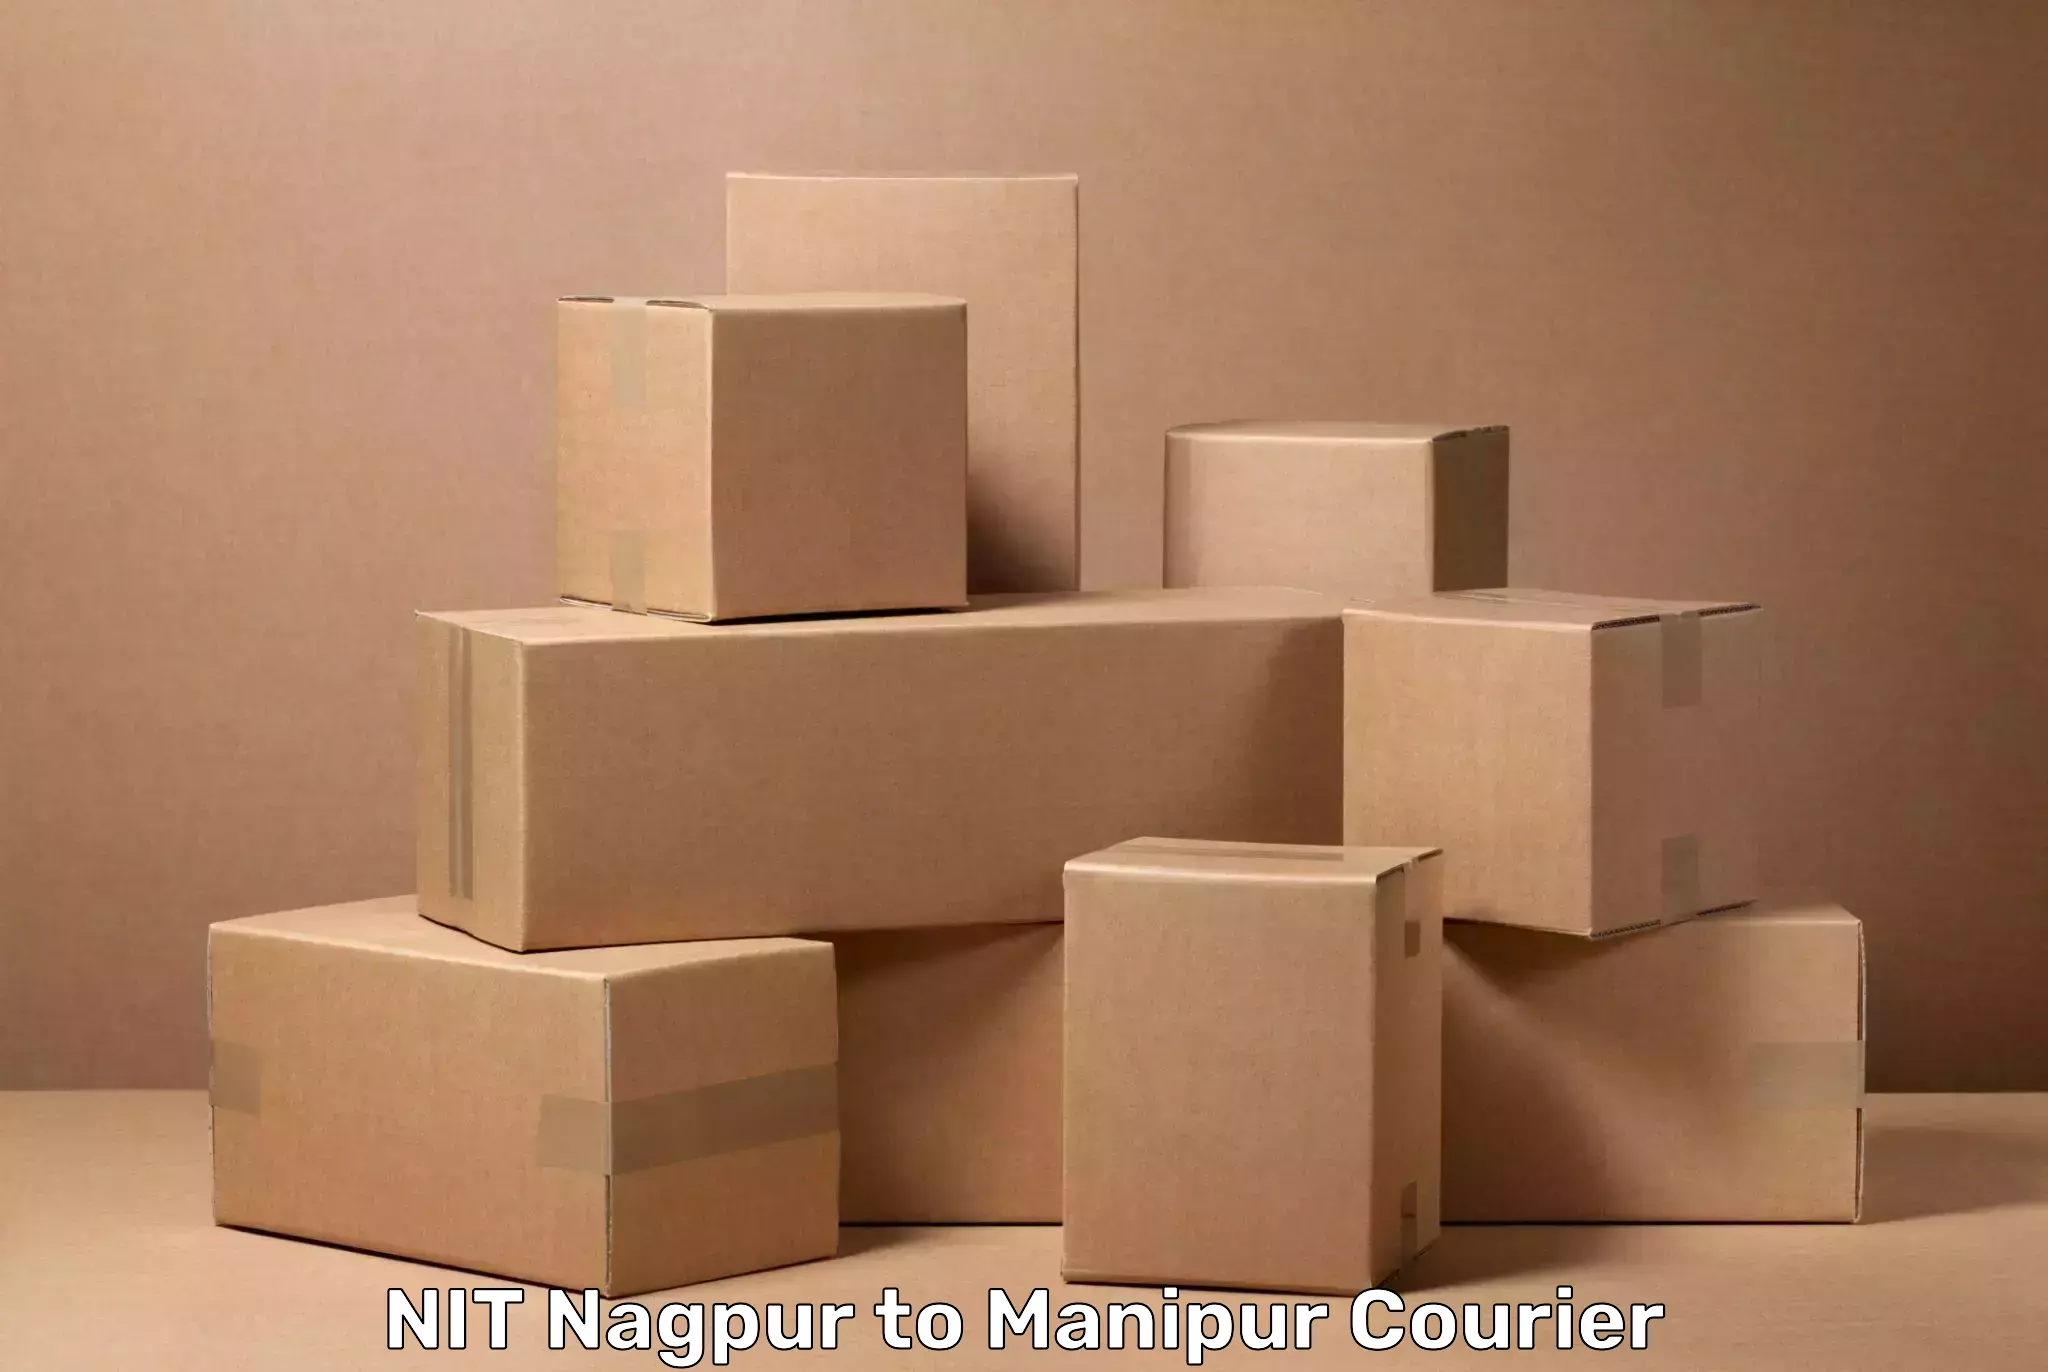 Luggage transport company NIT Nagpur to Ukhrul